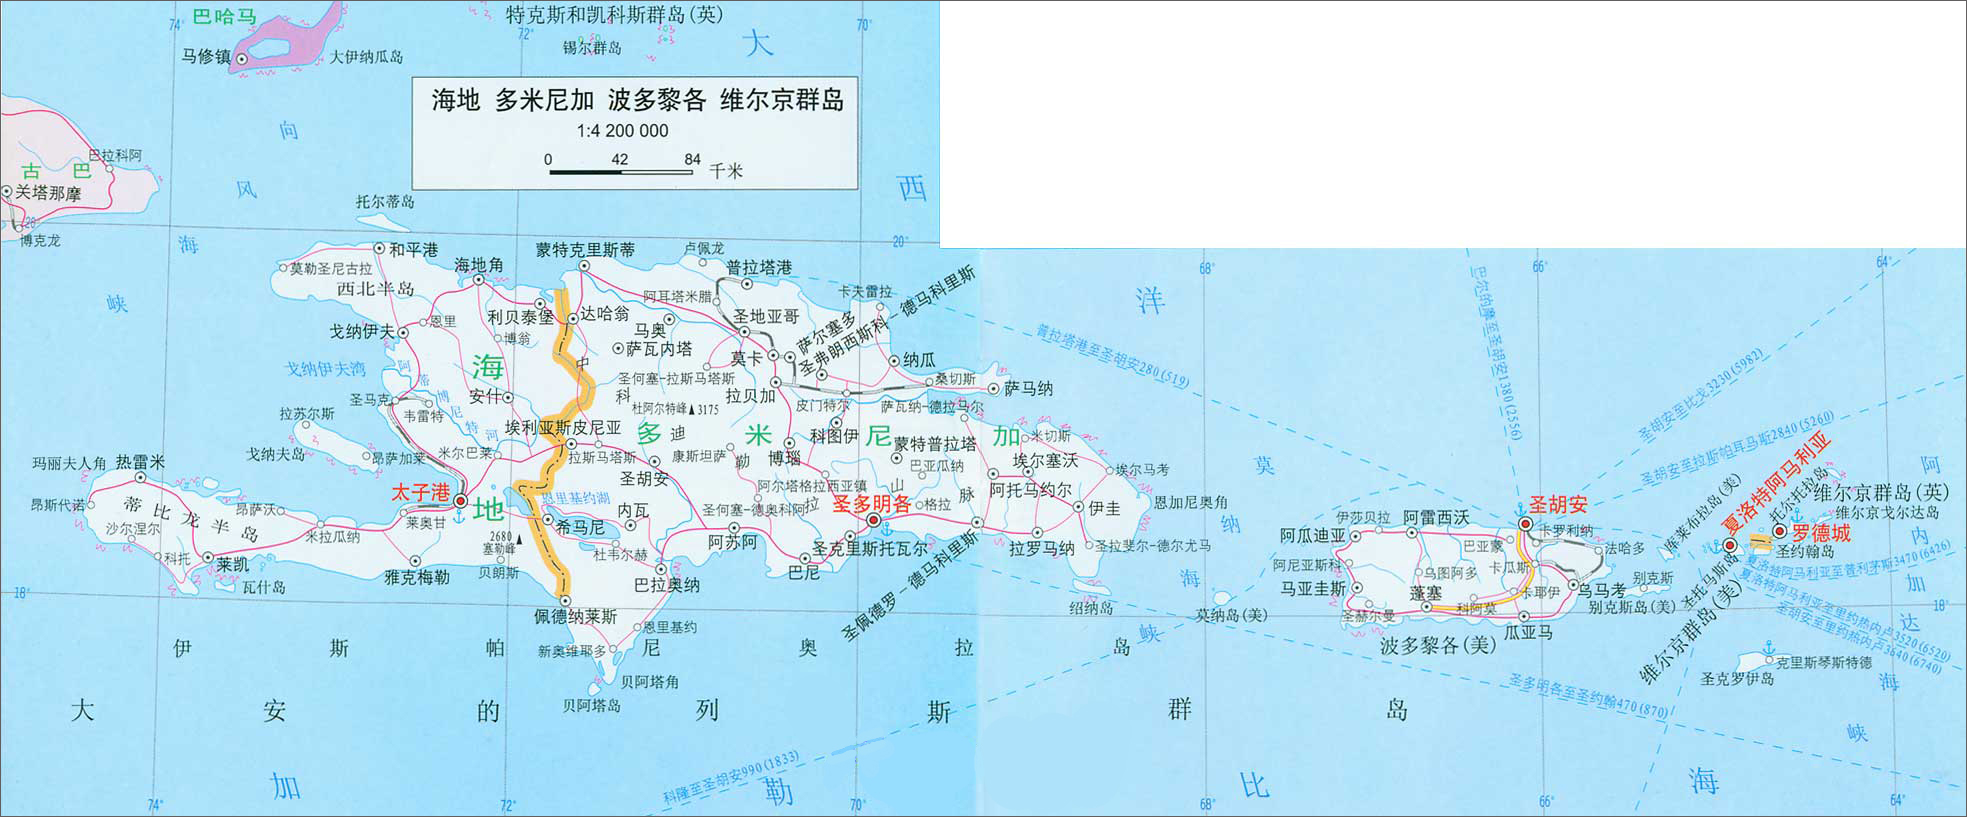 海地_多米尼加_波多黎各_维尔京群岛地图